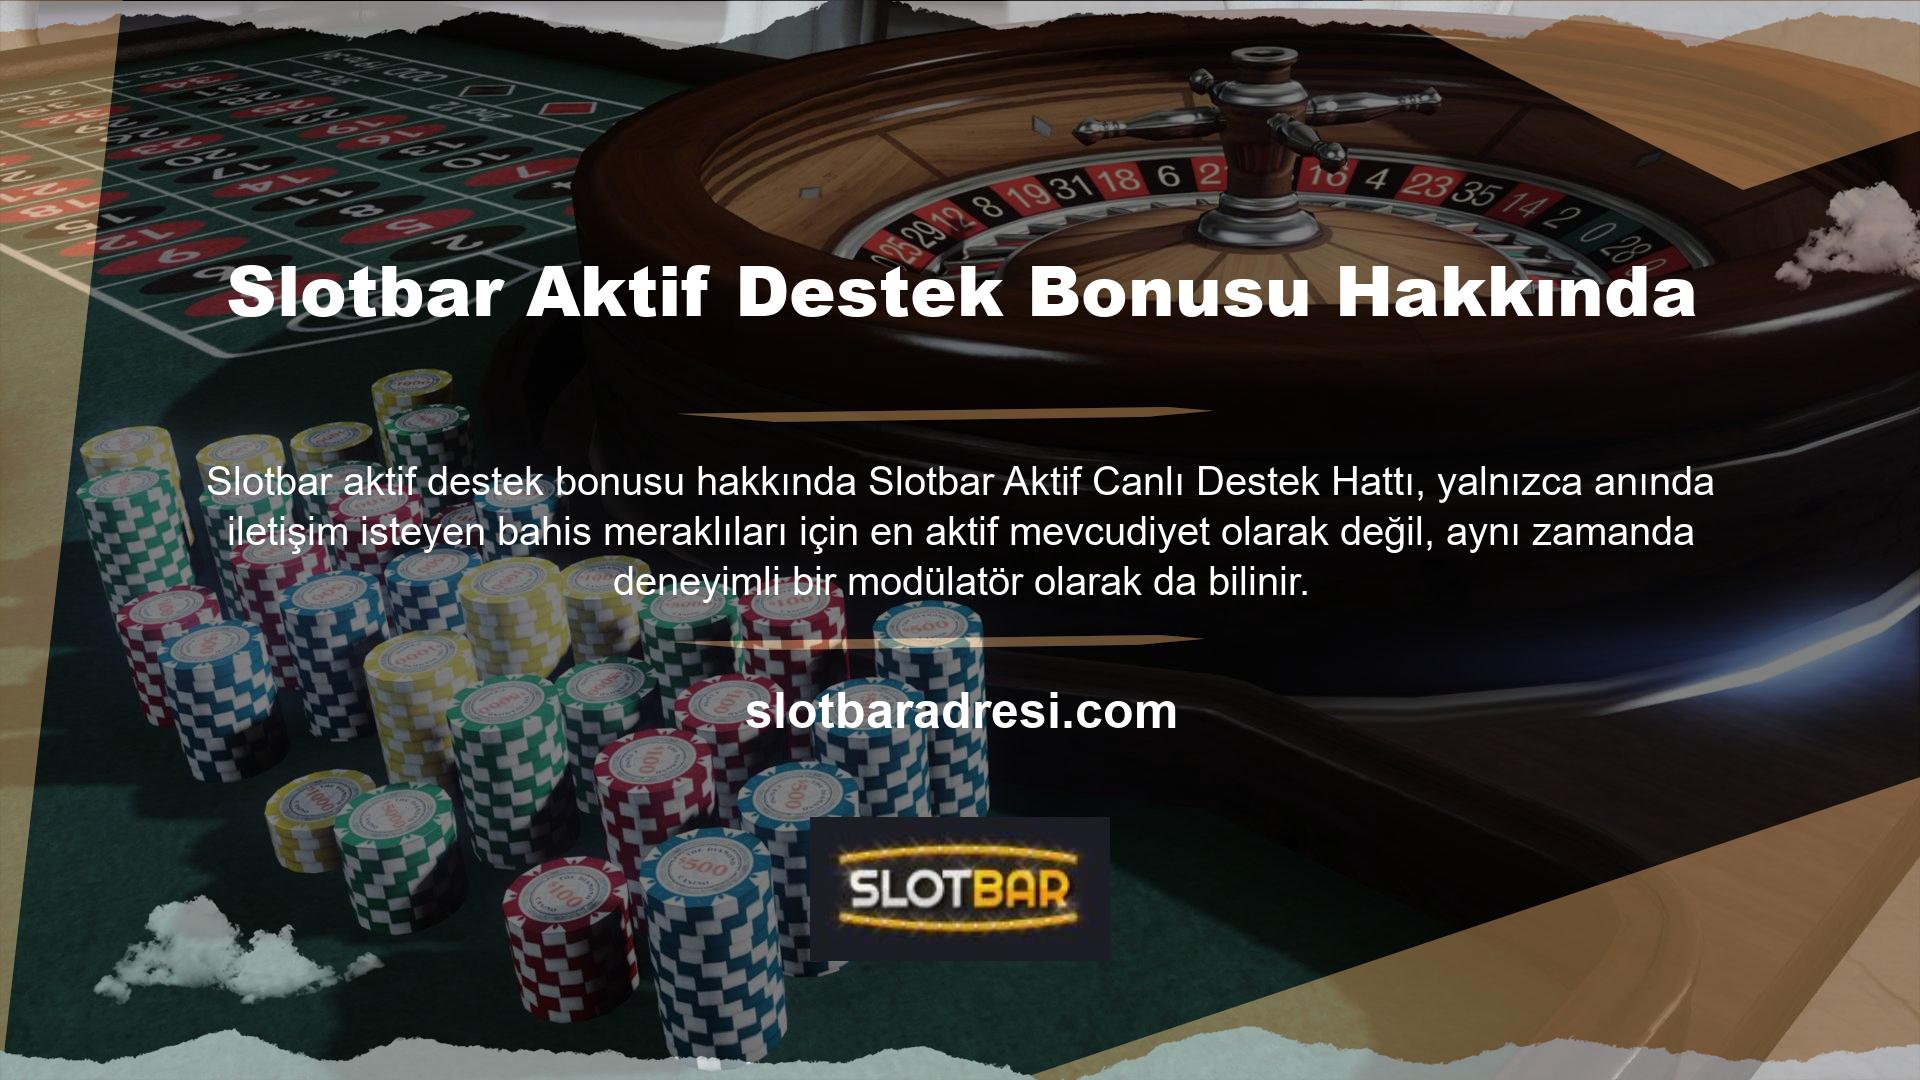 Slotbar Aktif Destek Bonusu Hakkında Kullanıcıların sitenin ana sayfasında görüntüleyebileceği bahis başlıkları Spor, Canlı Casino, Sanal Spor, Casino, Video Oyunları, Canlı Bingo ve Oyunlardır